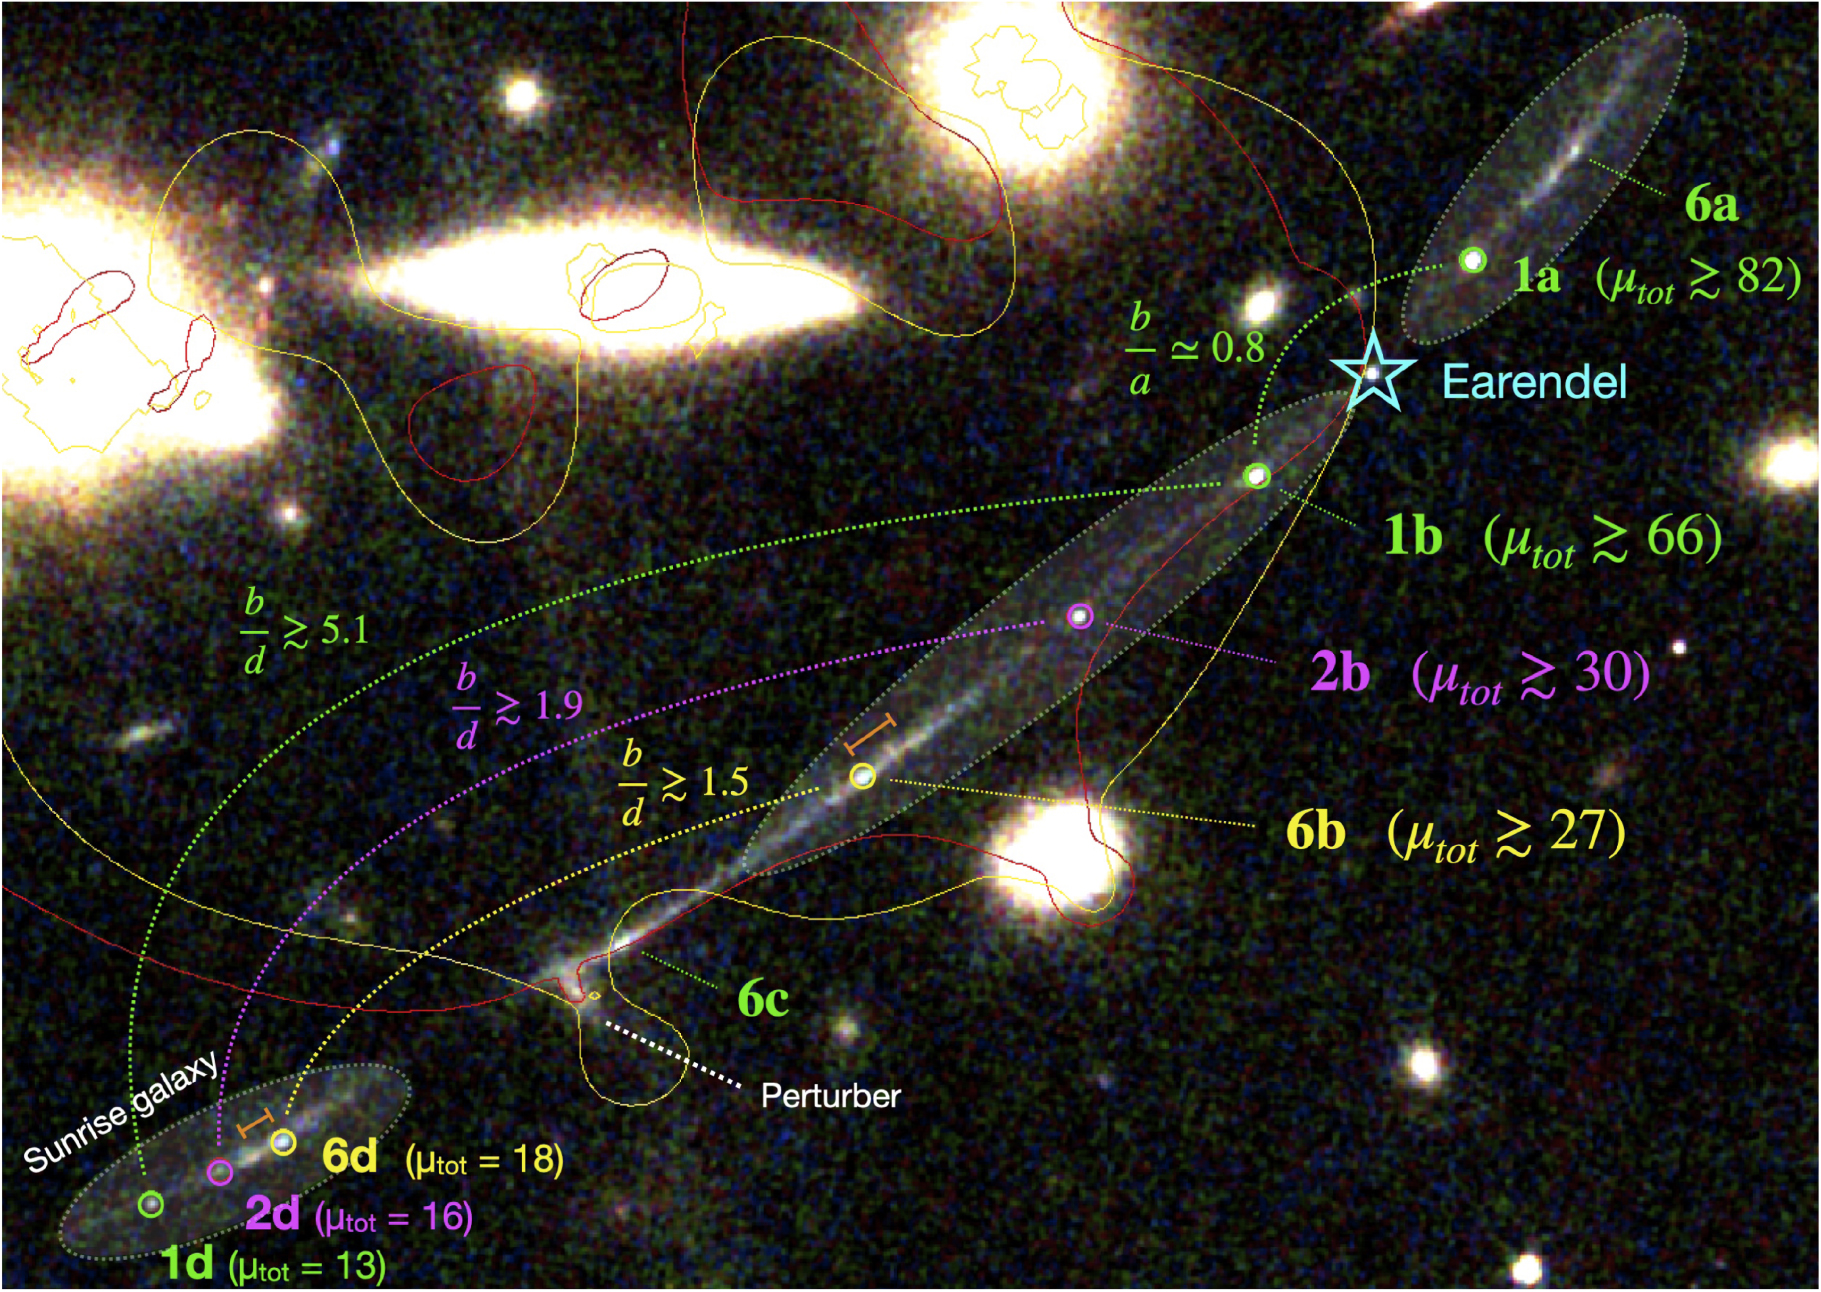 Na ilustracji: Zdjęcia soczewkowanej grawitacyjnie galaktyki Łuk Wschodzącego Słońca (ang. Sunrise Arc), które zostało wykonane przez Teleskop Webba z dwoma modelami soczewek grawitacyjnych reprezentowanych przez tzw. krzywe krytyczne – jeden oznaczony czerwoną linią (bardziej zwarty) oraz drugi z żółtą linią (najbardziej realistyczny z „zachowawczymi” wartościami wzmocnienia jasności „μtot”). Wielokrotne obrazy tych samych obiektów-gromad gwiazdowych są połączone kropkowanymi liniami o takich samych kolorach: 1a+1b+1d, 2b+2d. Tutaj b/d, b/a oznaczają stosunki jasności pomiędzy sąsiednimi, wielokrotnymi obrazami tego samego obiektu. Obiekt 6c astronomowie rozpoznali, jako obszar formowania się gwiazd masywnych, który znajduje się w pobliżu źródła soczewkowania grawitacyjnego „perturber” zakrzywiającego linie krytyczne i wzmacniający jasność tego fragmentu Łuku Wschodzącego Słońca. Pojaśnienia 6a, 6b, 6c i 6d są wielokrotnymi obrazami tego samego obiektu – obszaru gwiazdotwórczego. Astronomowie planują dalszą analizę tej struktury w oparciu o obserwacje spektroskopowe. Źródło (CC BY 4.0): Vanzella E. i  inni 2023 ApJ 945 53) 